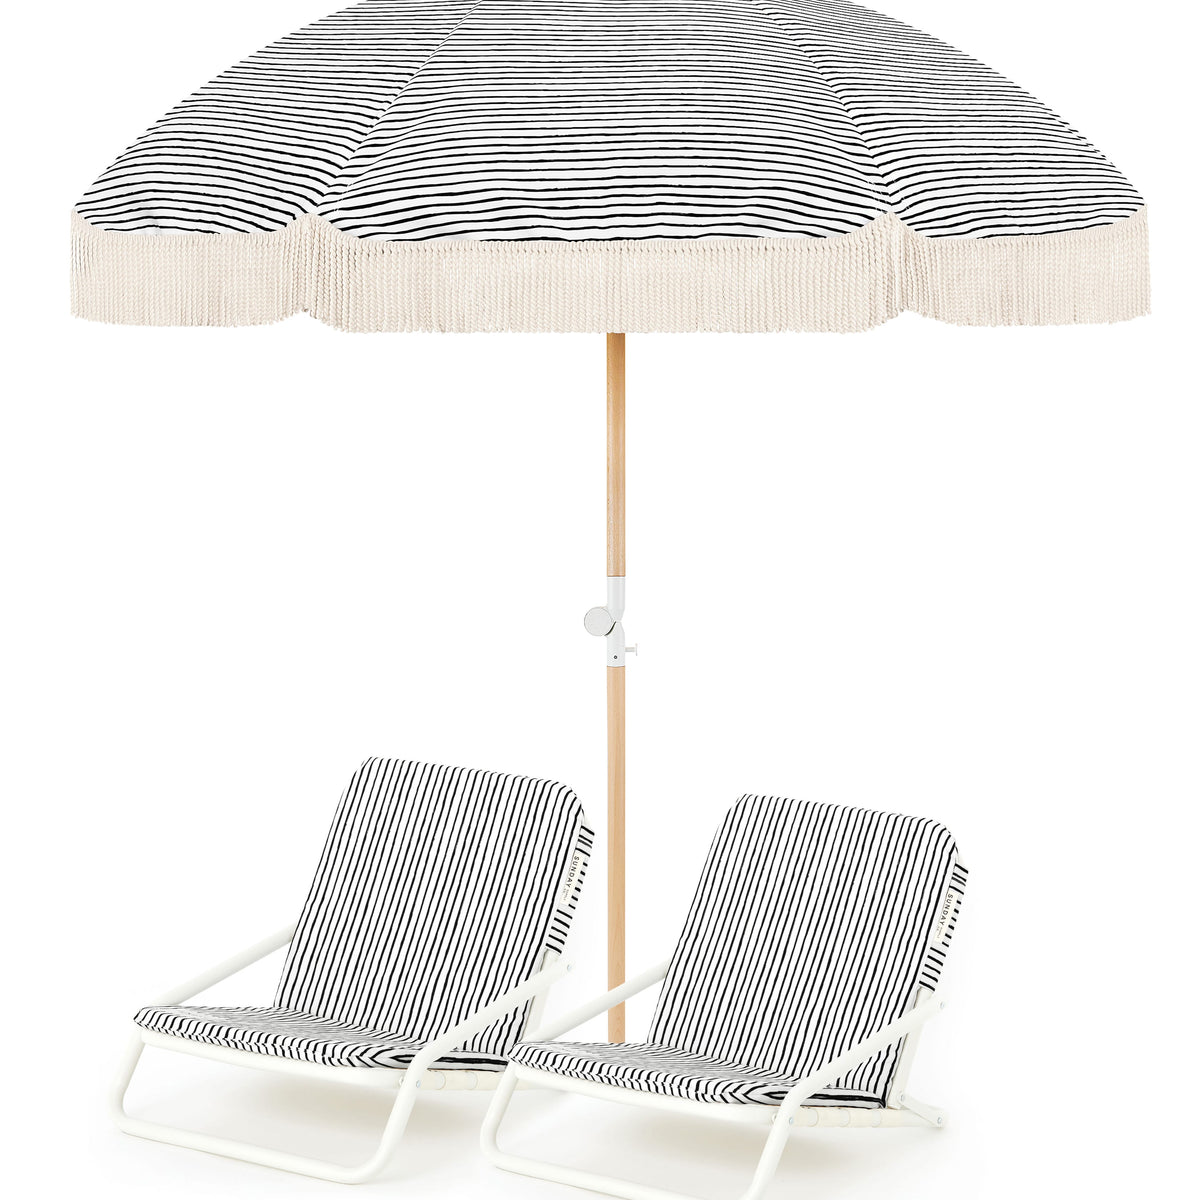 Natural Instinct Beach Umbrella & Beach Chair Set